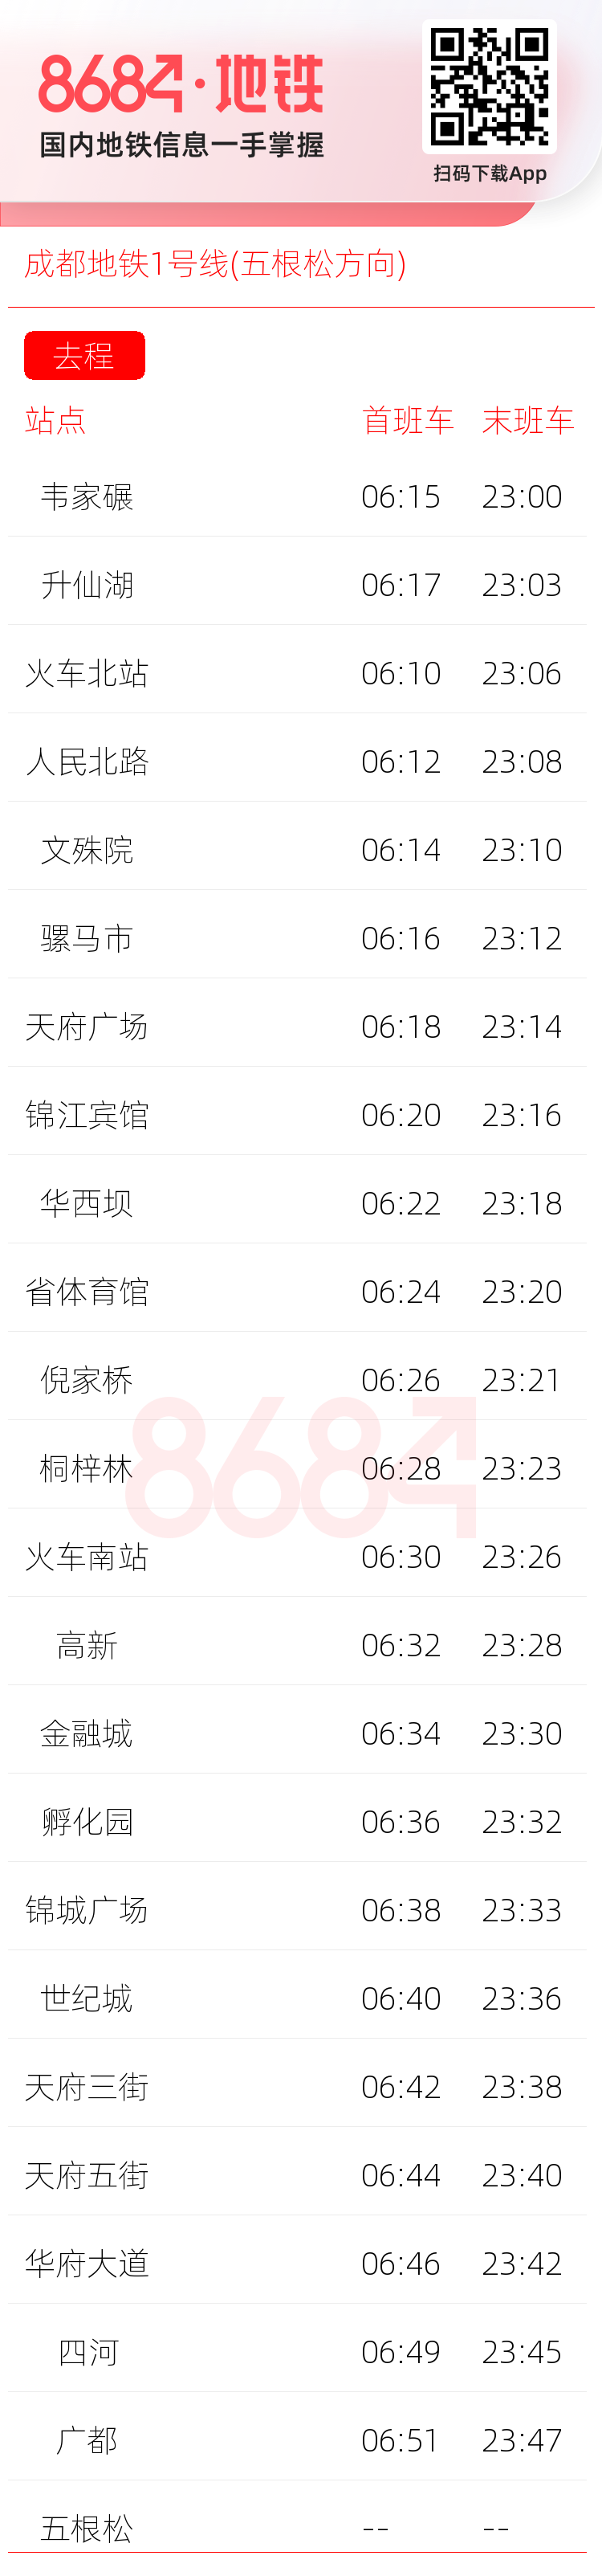 成都地铁1号线(五根松方向)运营时间表